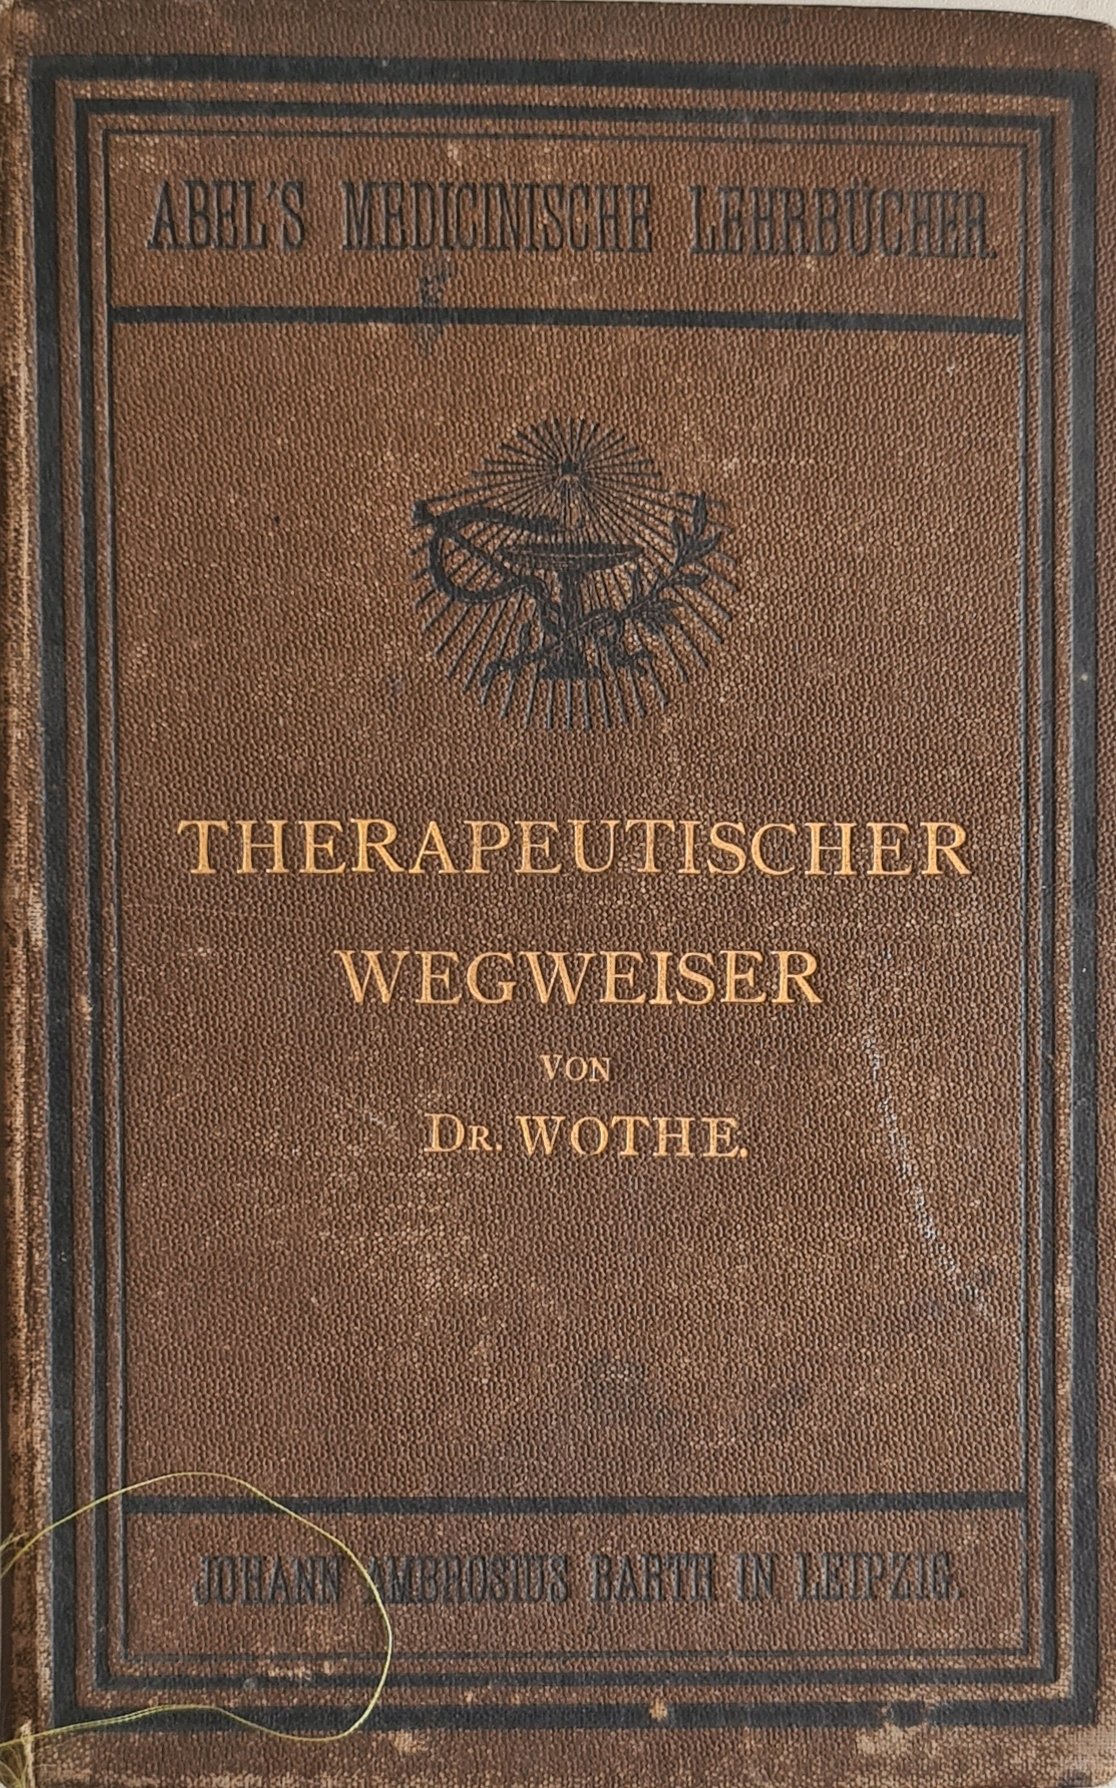 Therapeutischer Wegweiser (Krankenhausmuseum Bielefeld e.V. CC BY-NC-SA)